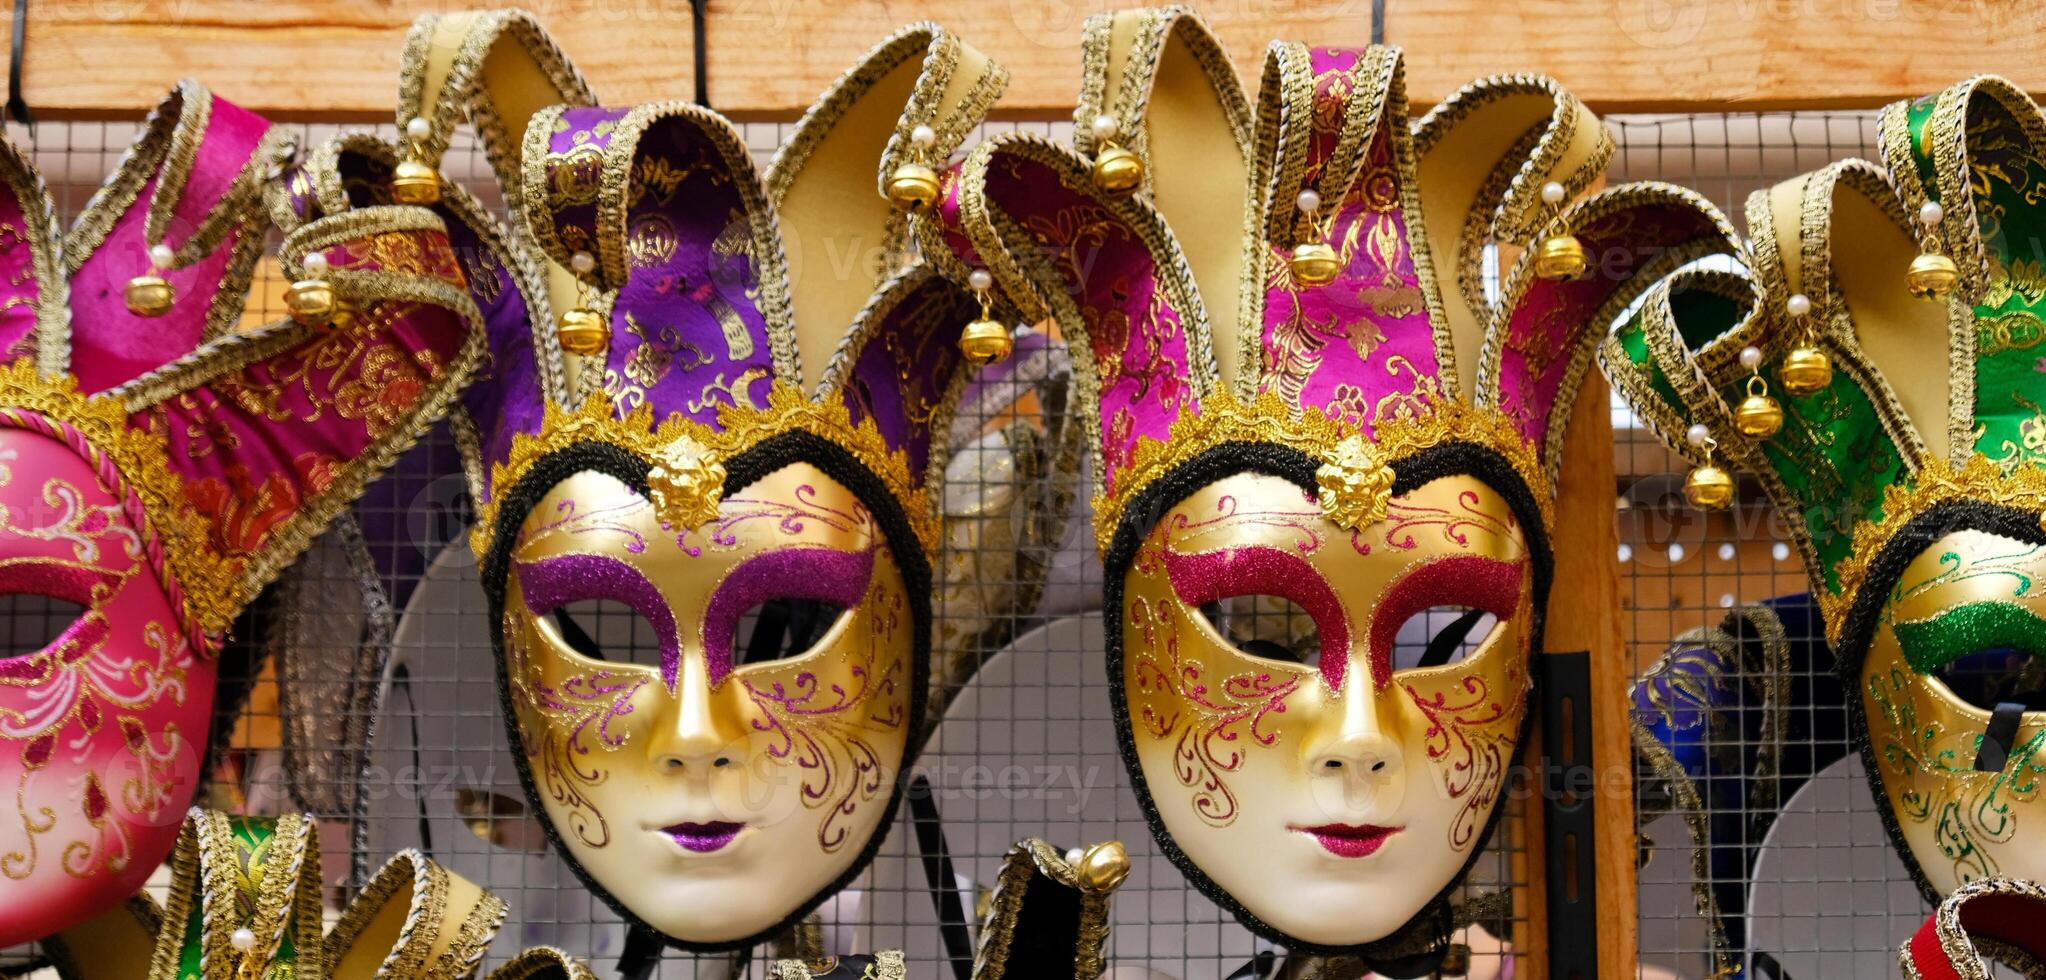 traditionnel vénitien masques sur étagères dans souvenirs magasin dans Venise, Italie. magnifique carnaval masques dans variété de couleurs. authentique et original vénitien visage complet masques pour carnaval. photo